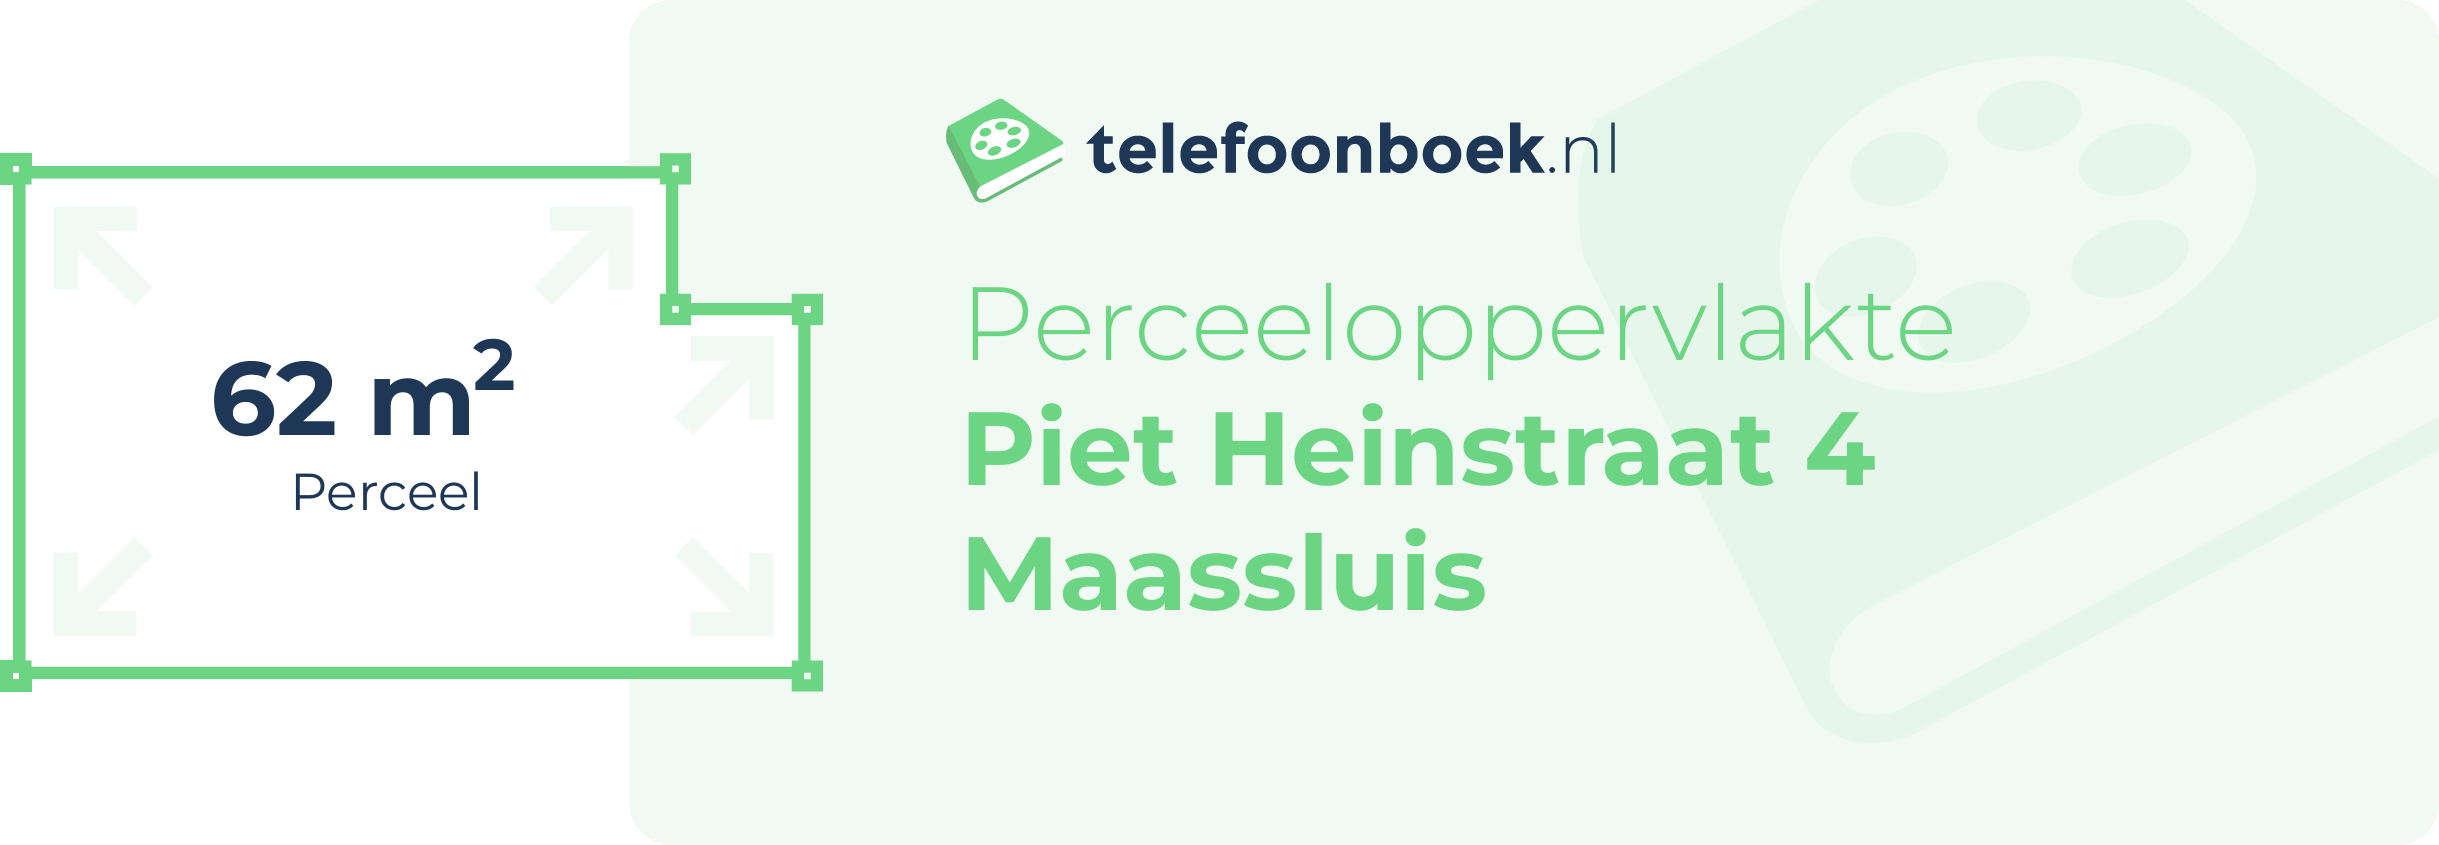 Perceeloppervlakte Piet Heinstraat 4 Maassluis